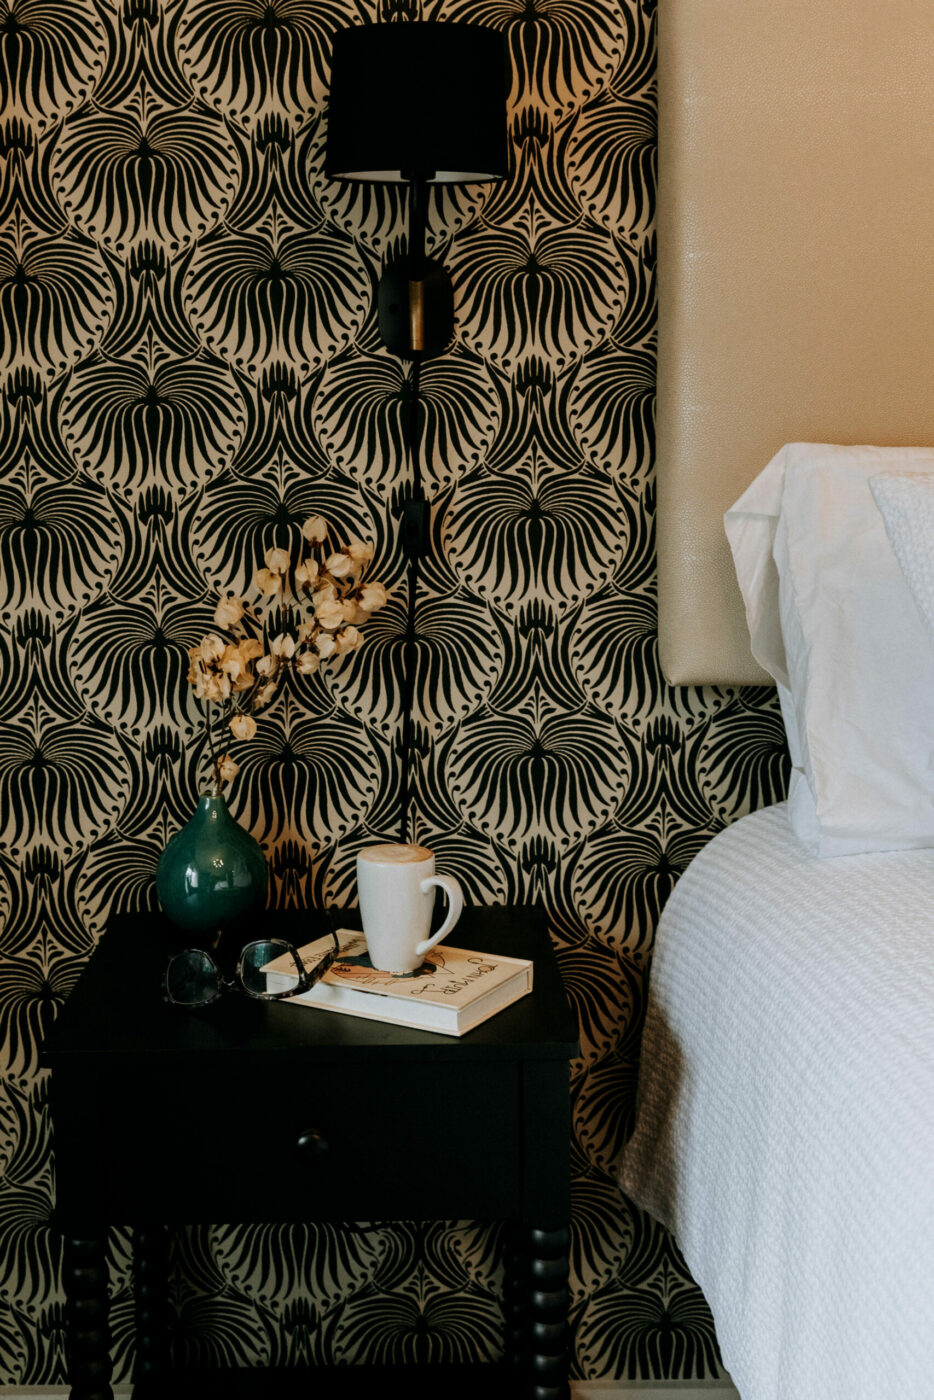 A redesigned room at El Dorado Hotel & Kitchen in Sonoma. (Maria Calderon Photography)